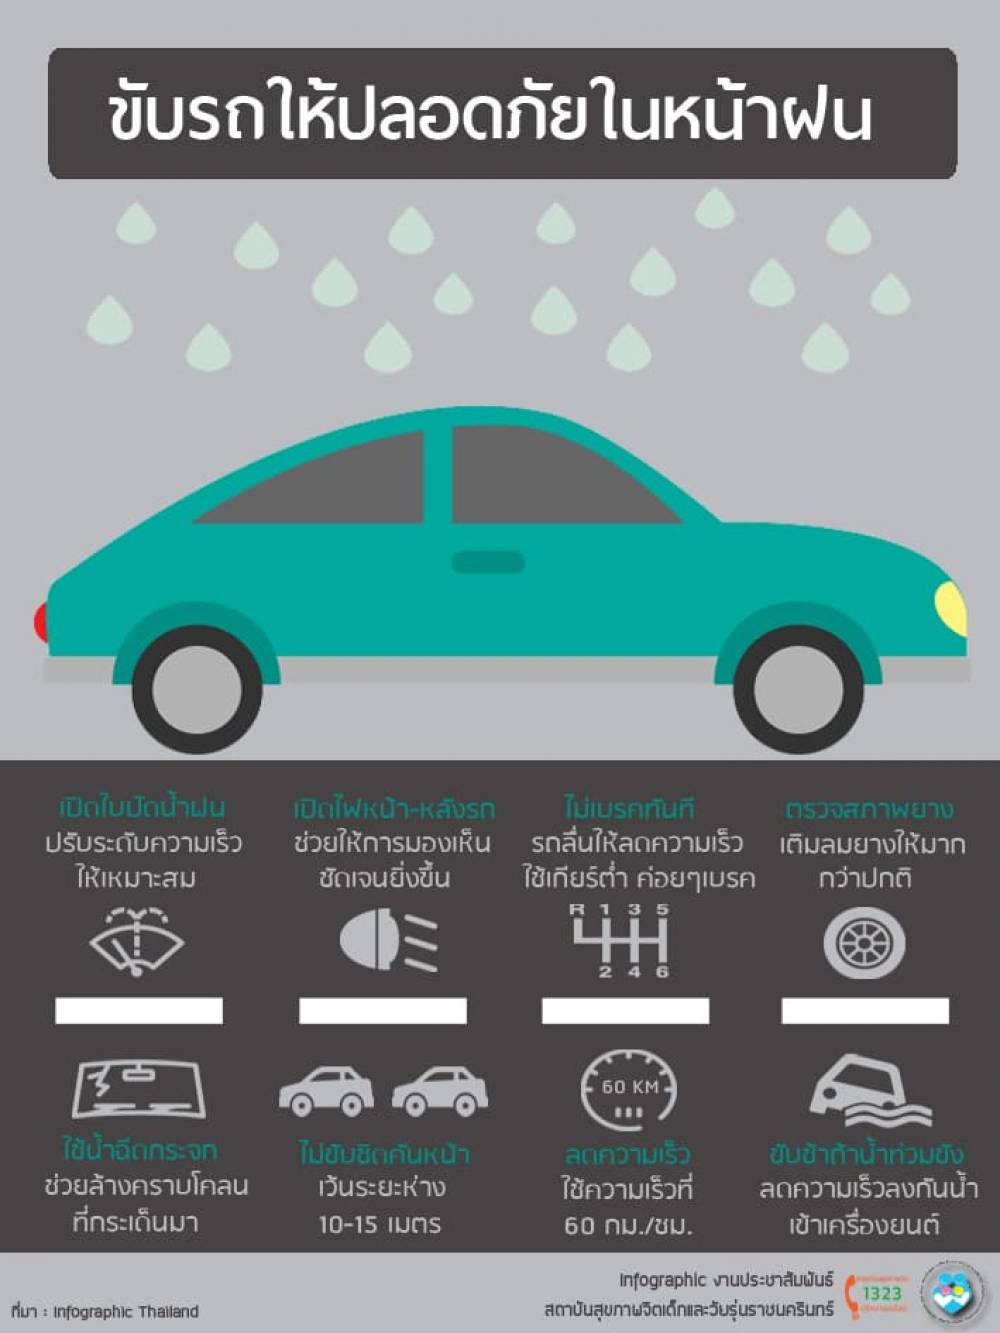 8 วิธีขับรถช่วงหน้าฝนให้ปลอดภัย